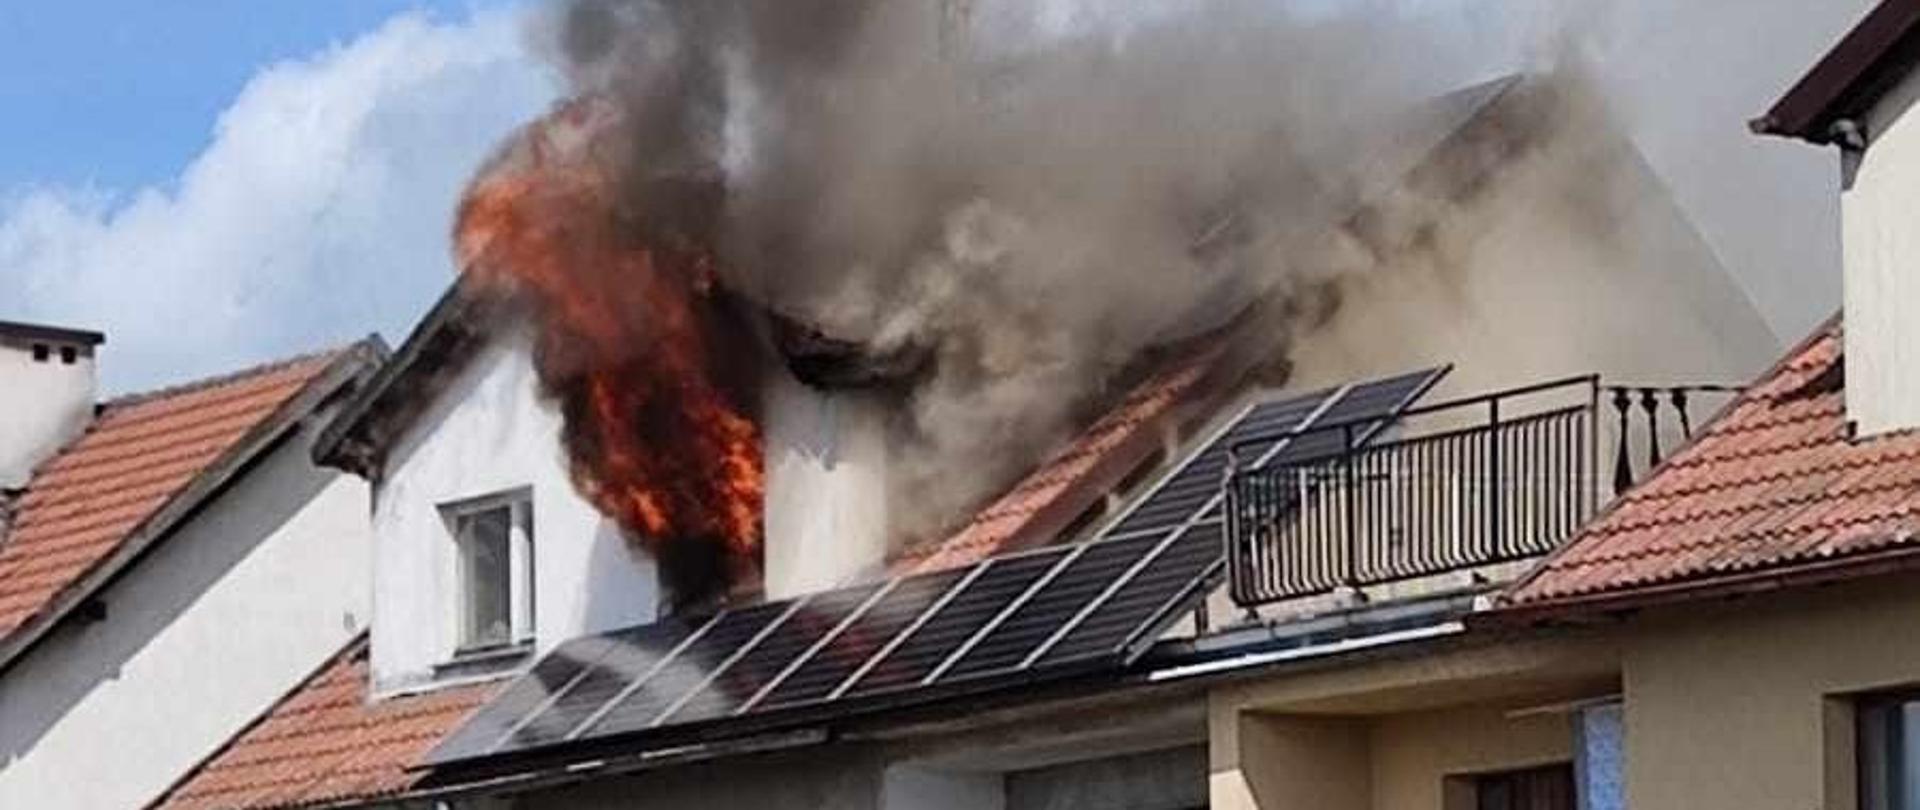 Zdjęcie przedstawia języki ognia i kłęby dymu wydobywające się z okna na poddaszu budynku mieszkalnego oraz samochód gaśniczy stojący przed budynkiem.